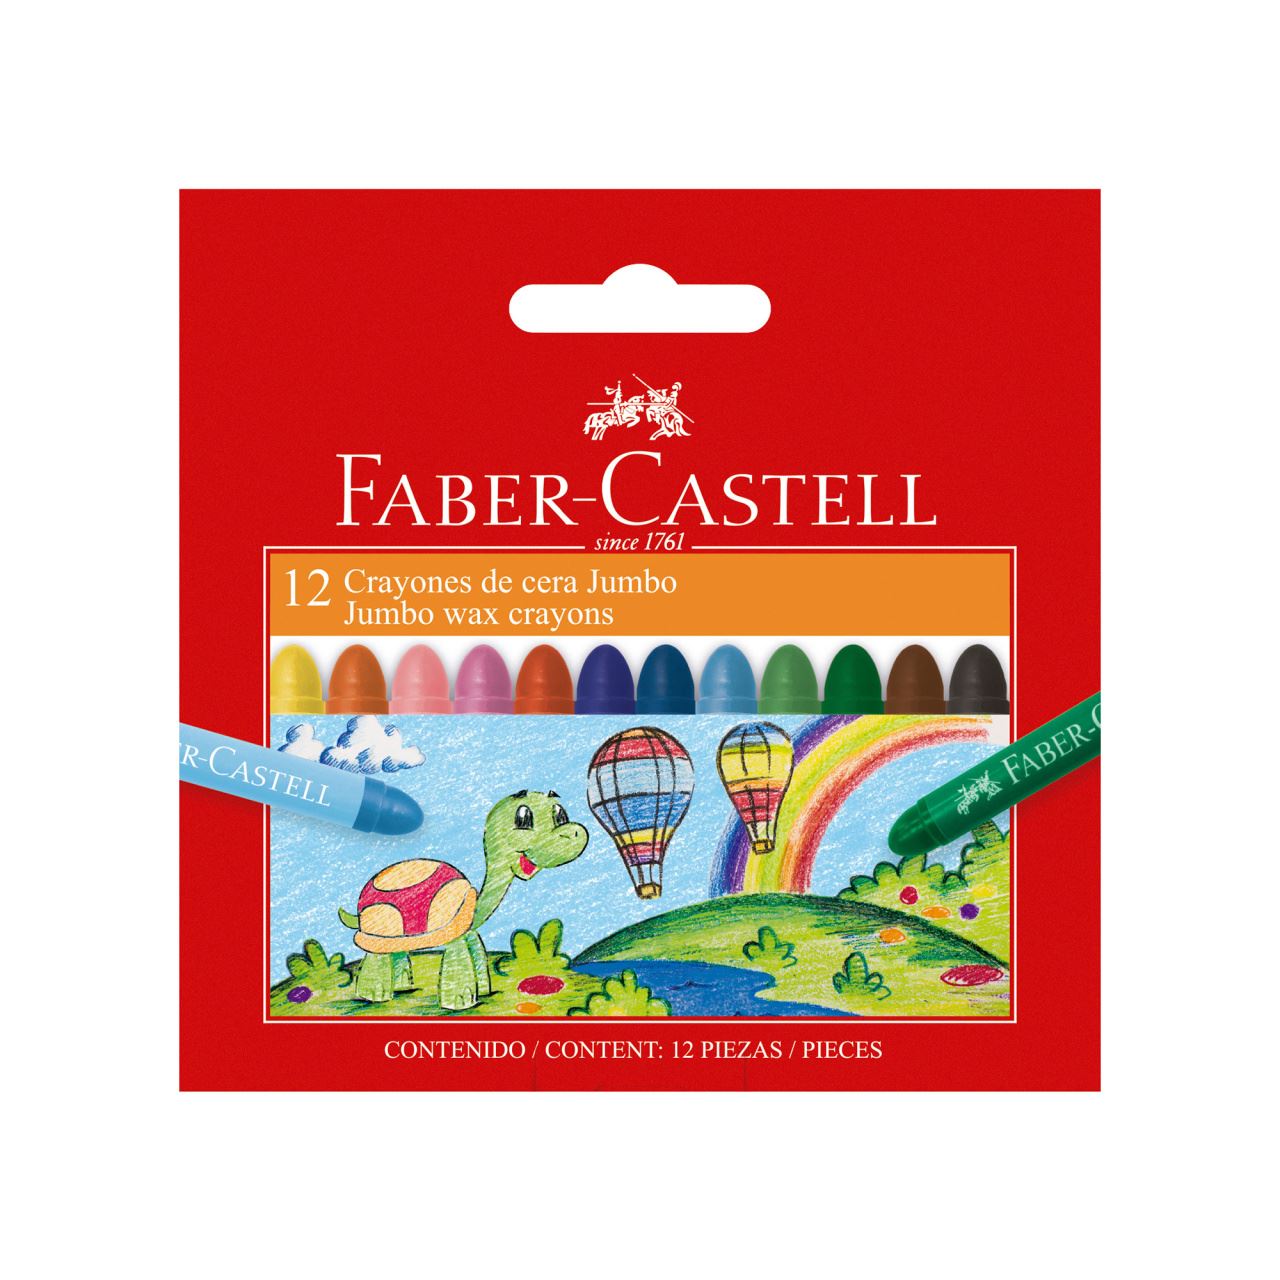 Faber-Castell - Crayones de cera Jumbo estuche x24